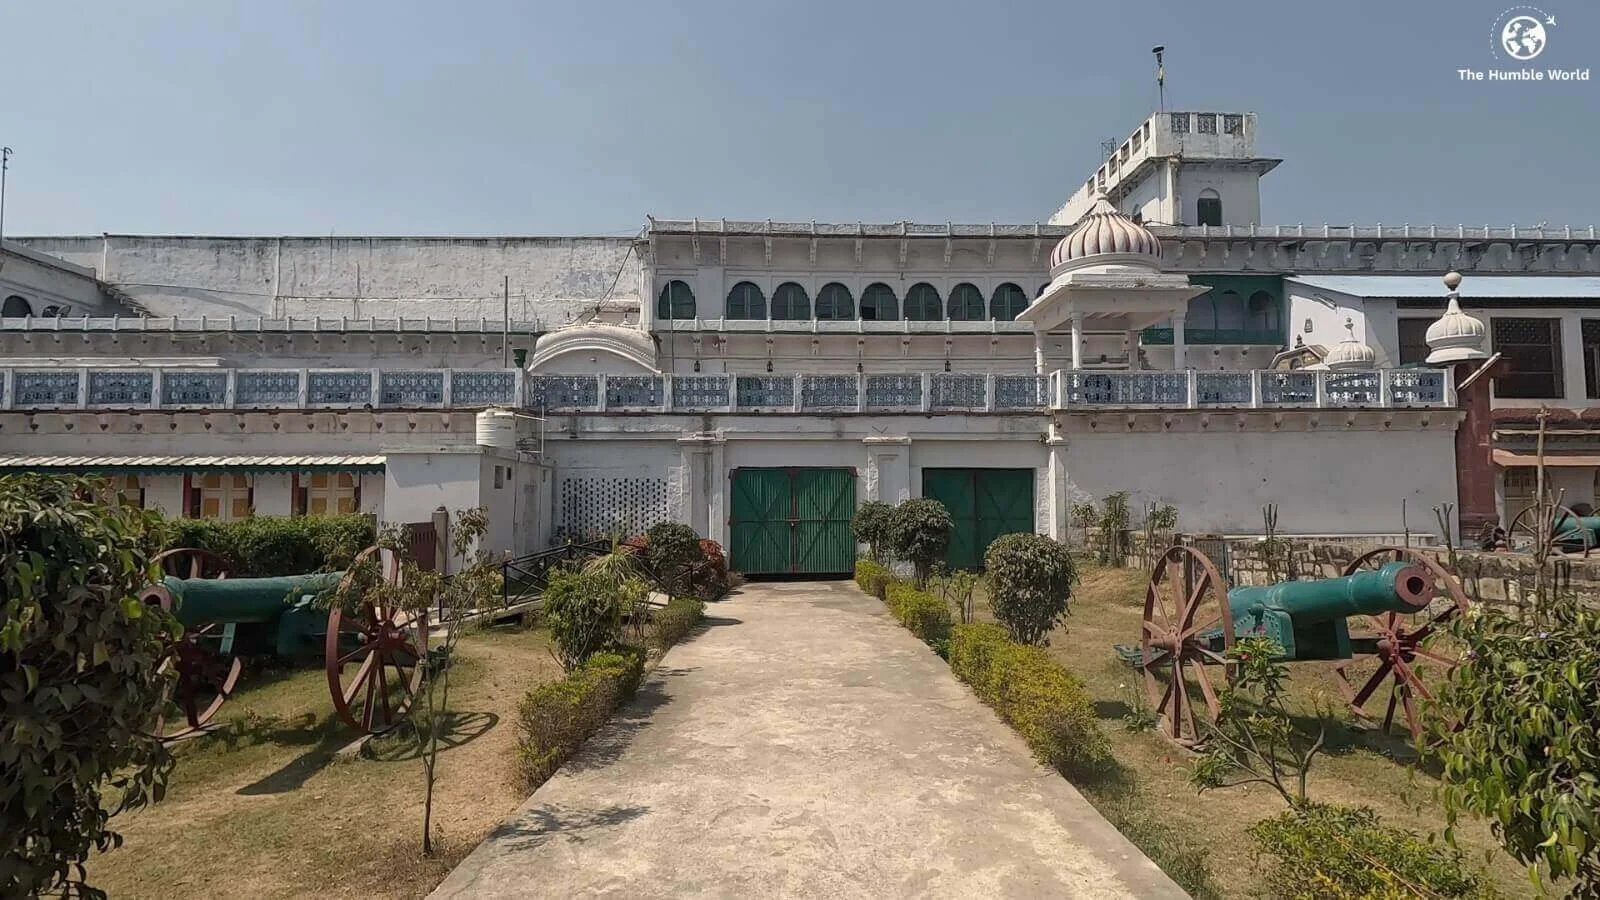 Rewa Fort - Madhya Pradesh